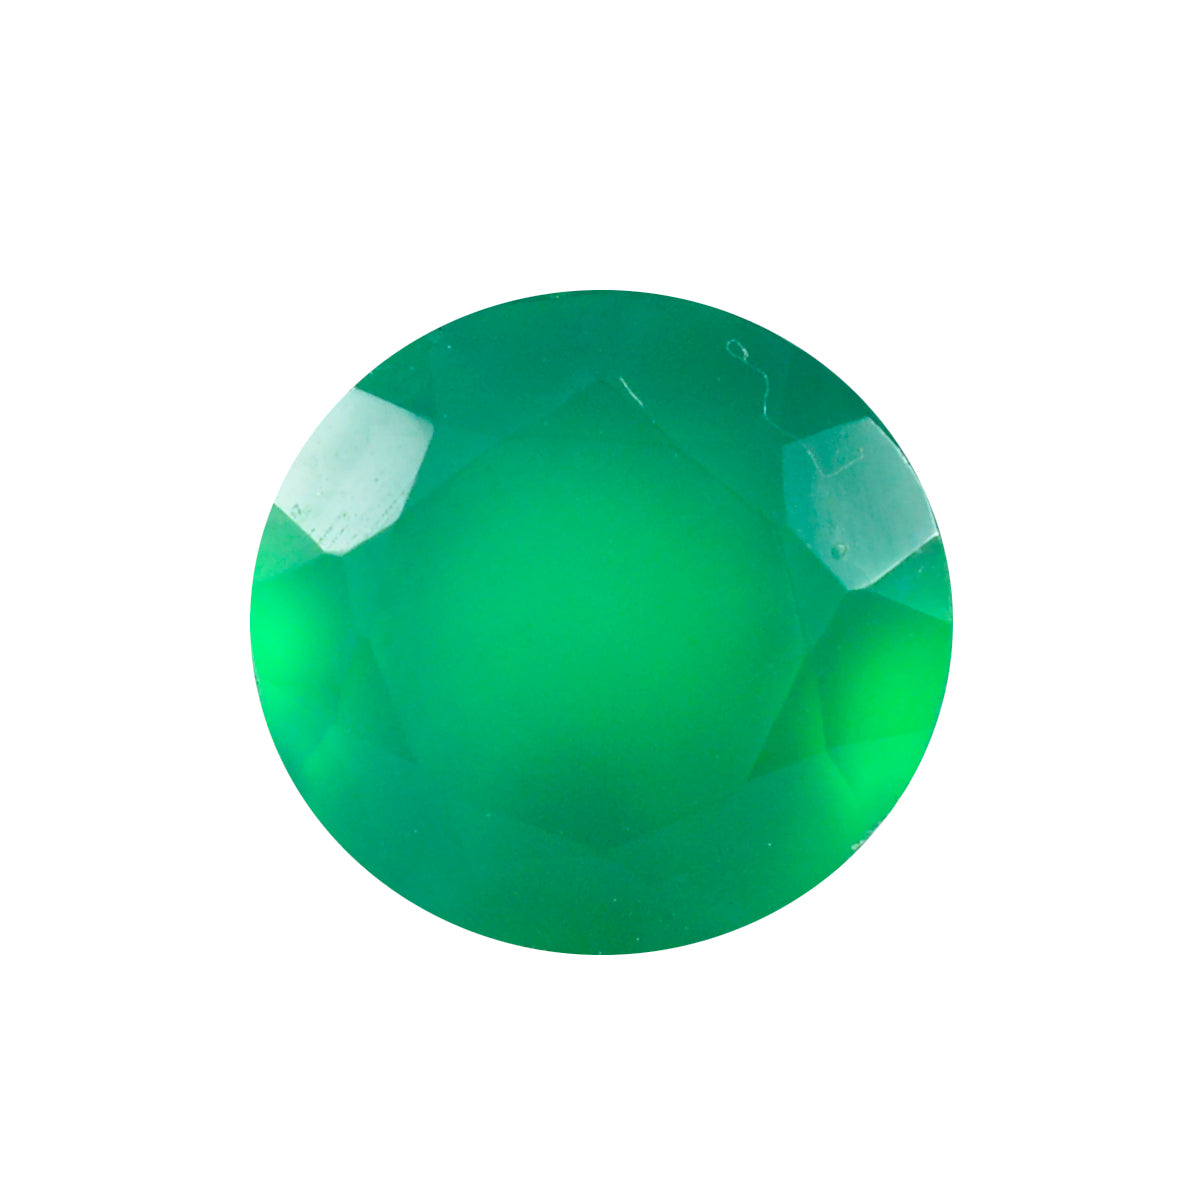 Riyogems 1 Stück natürlicher grüner Onyx, facettiert, 11 x 11 mm, runde Form, hübscher, hochwertiger loser Stein